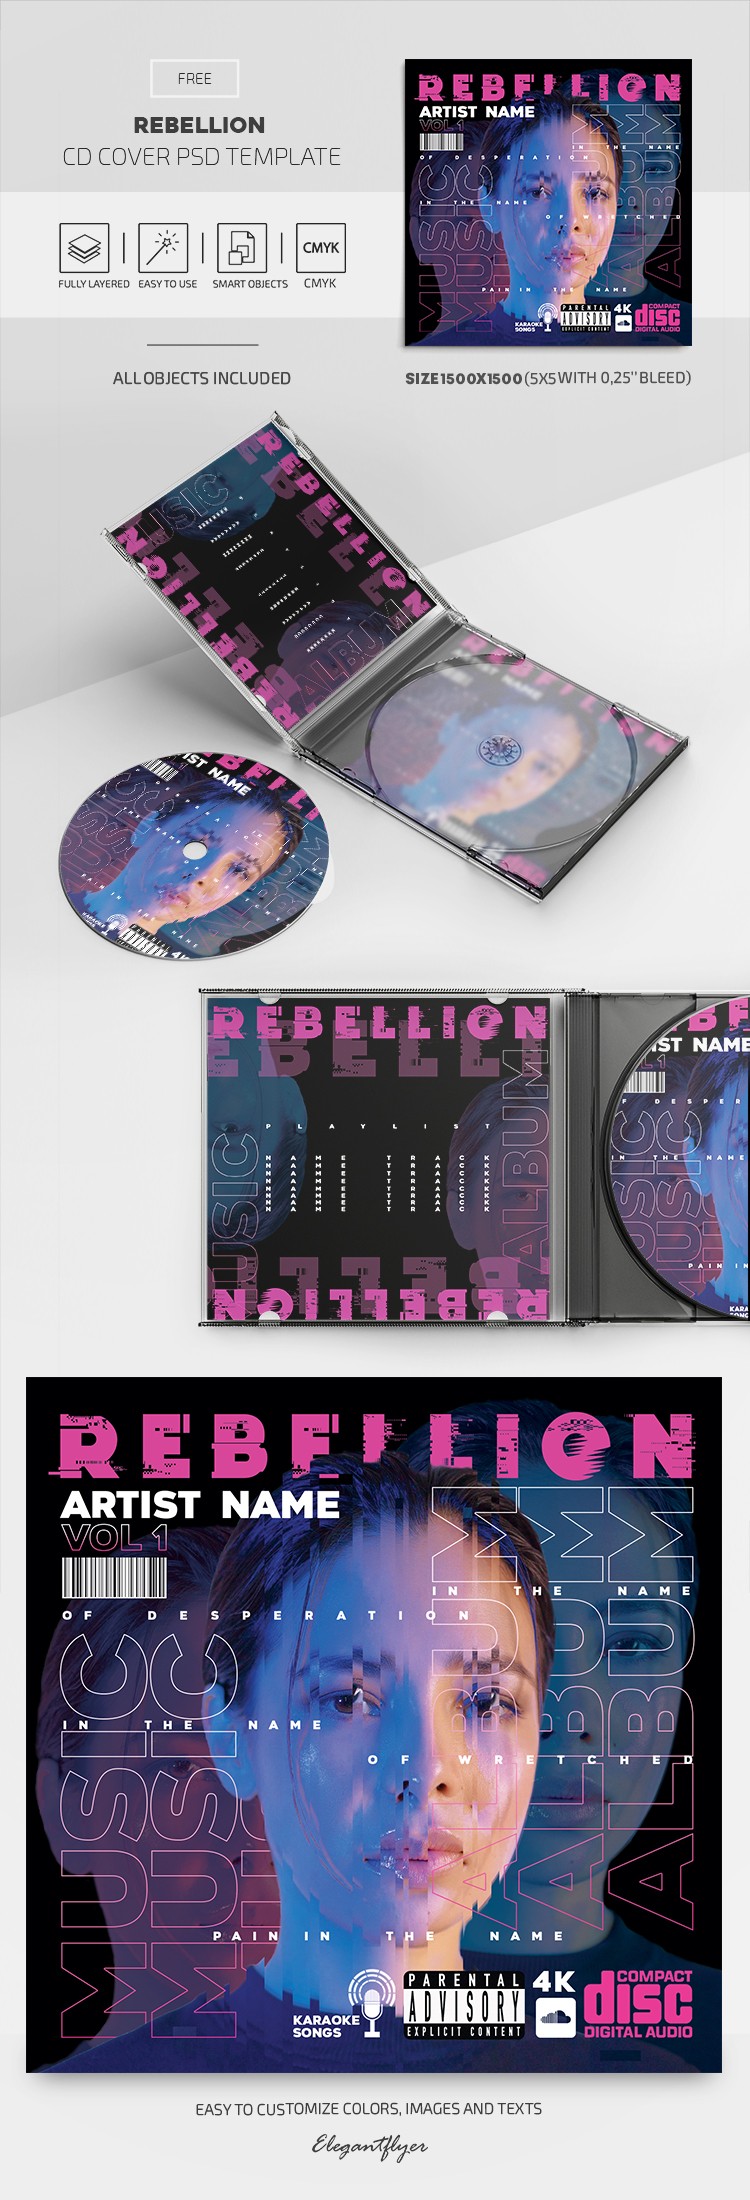 Rebellion CD Cover by ElegantFlyer